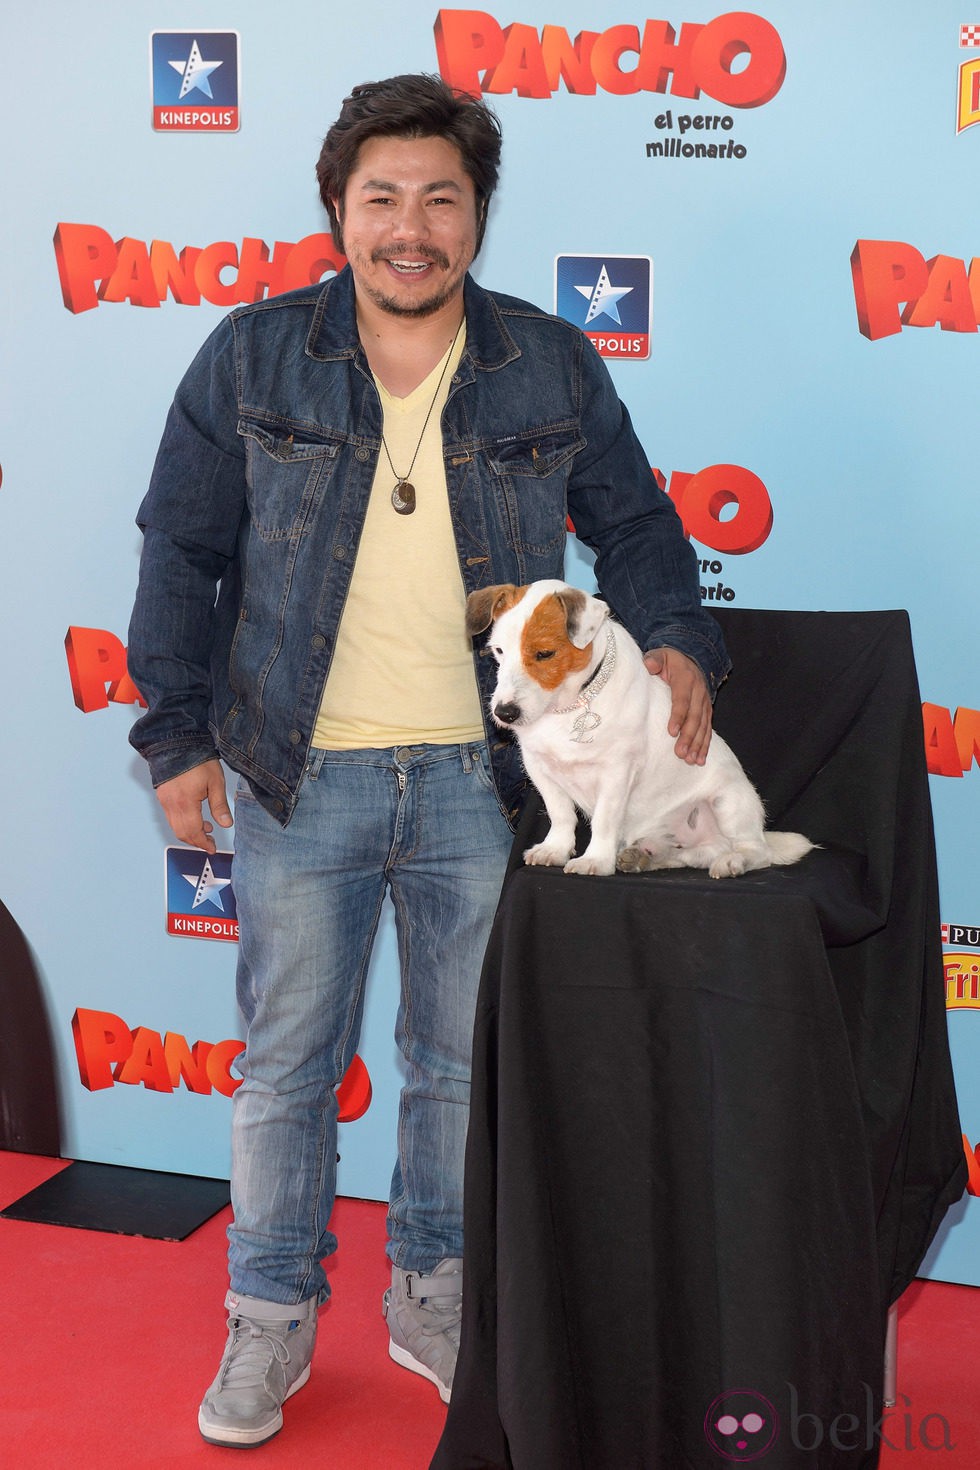 Óscar Reyes en la premiere de 'Pancho, el perro millonario' en Madrid